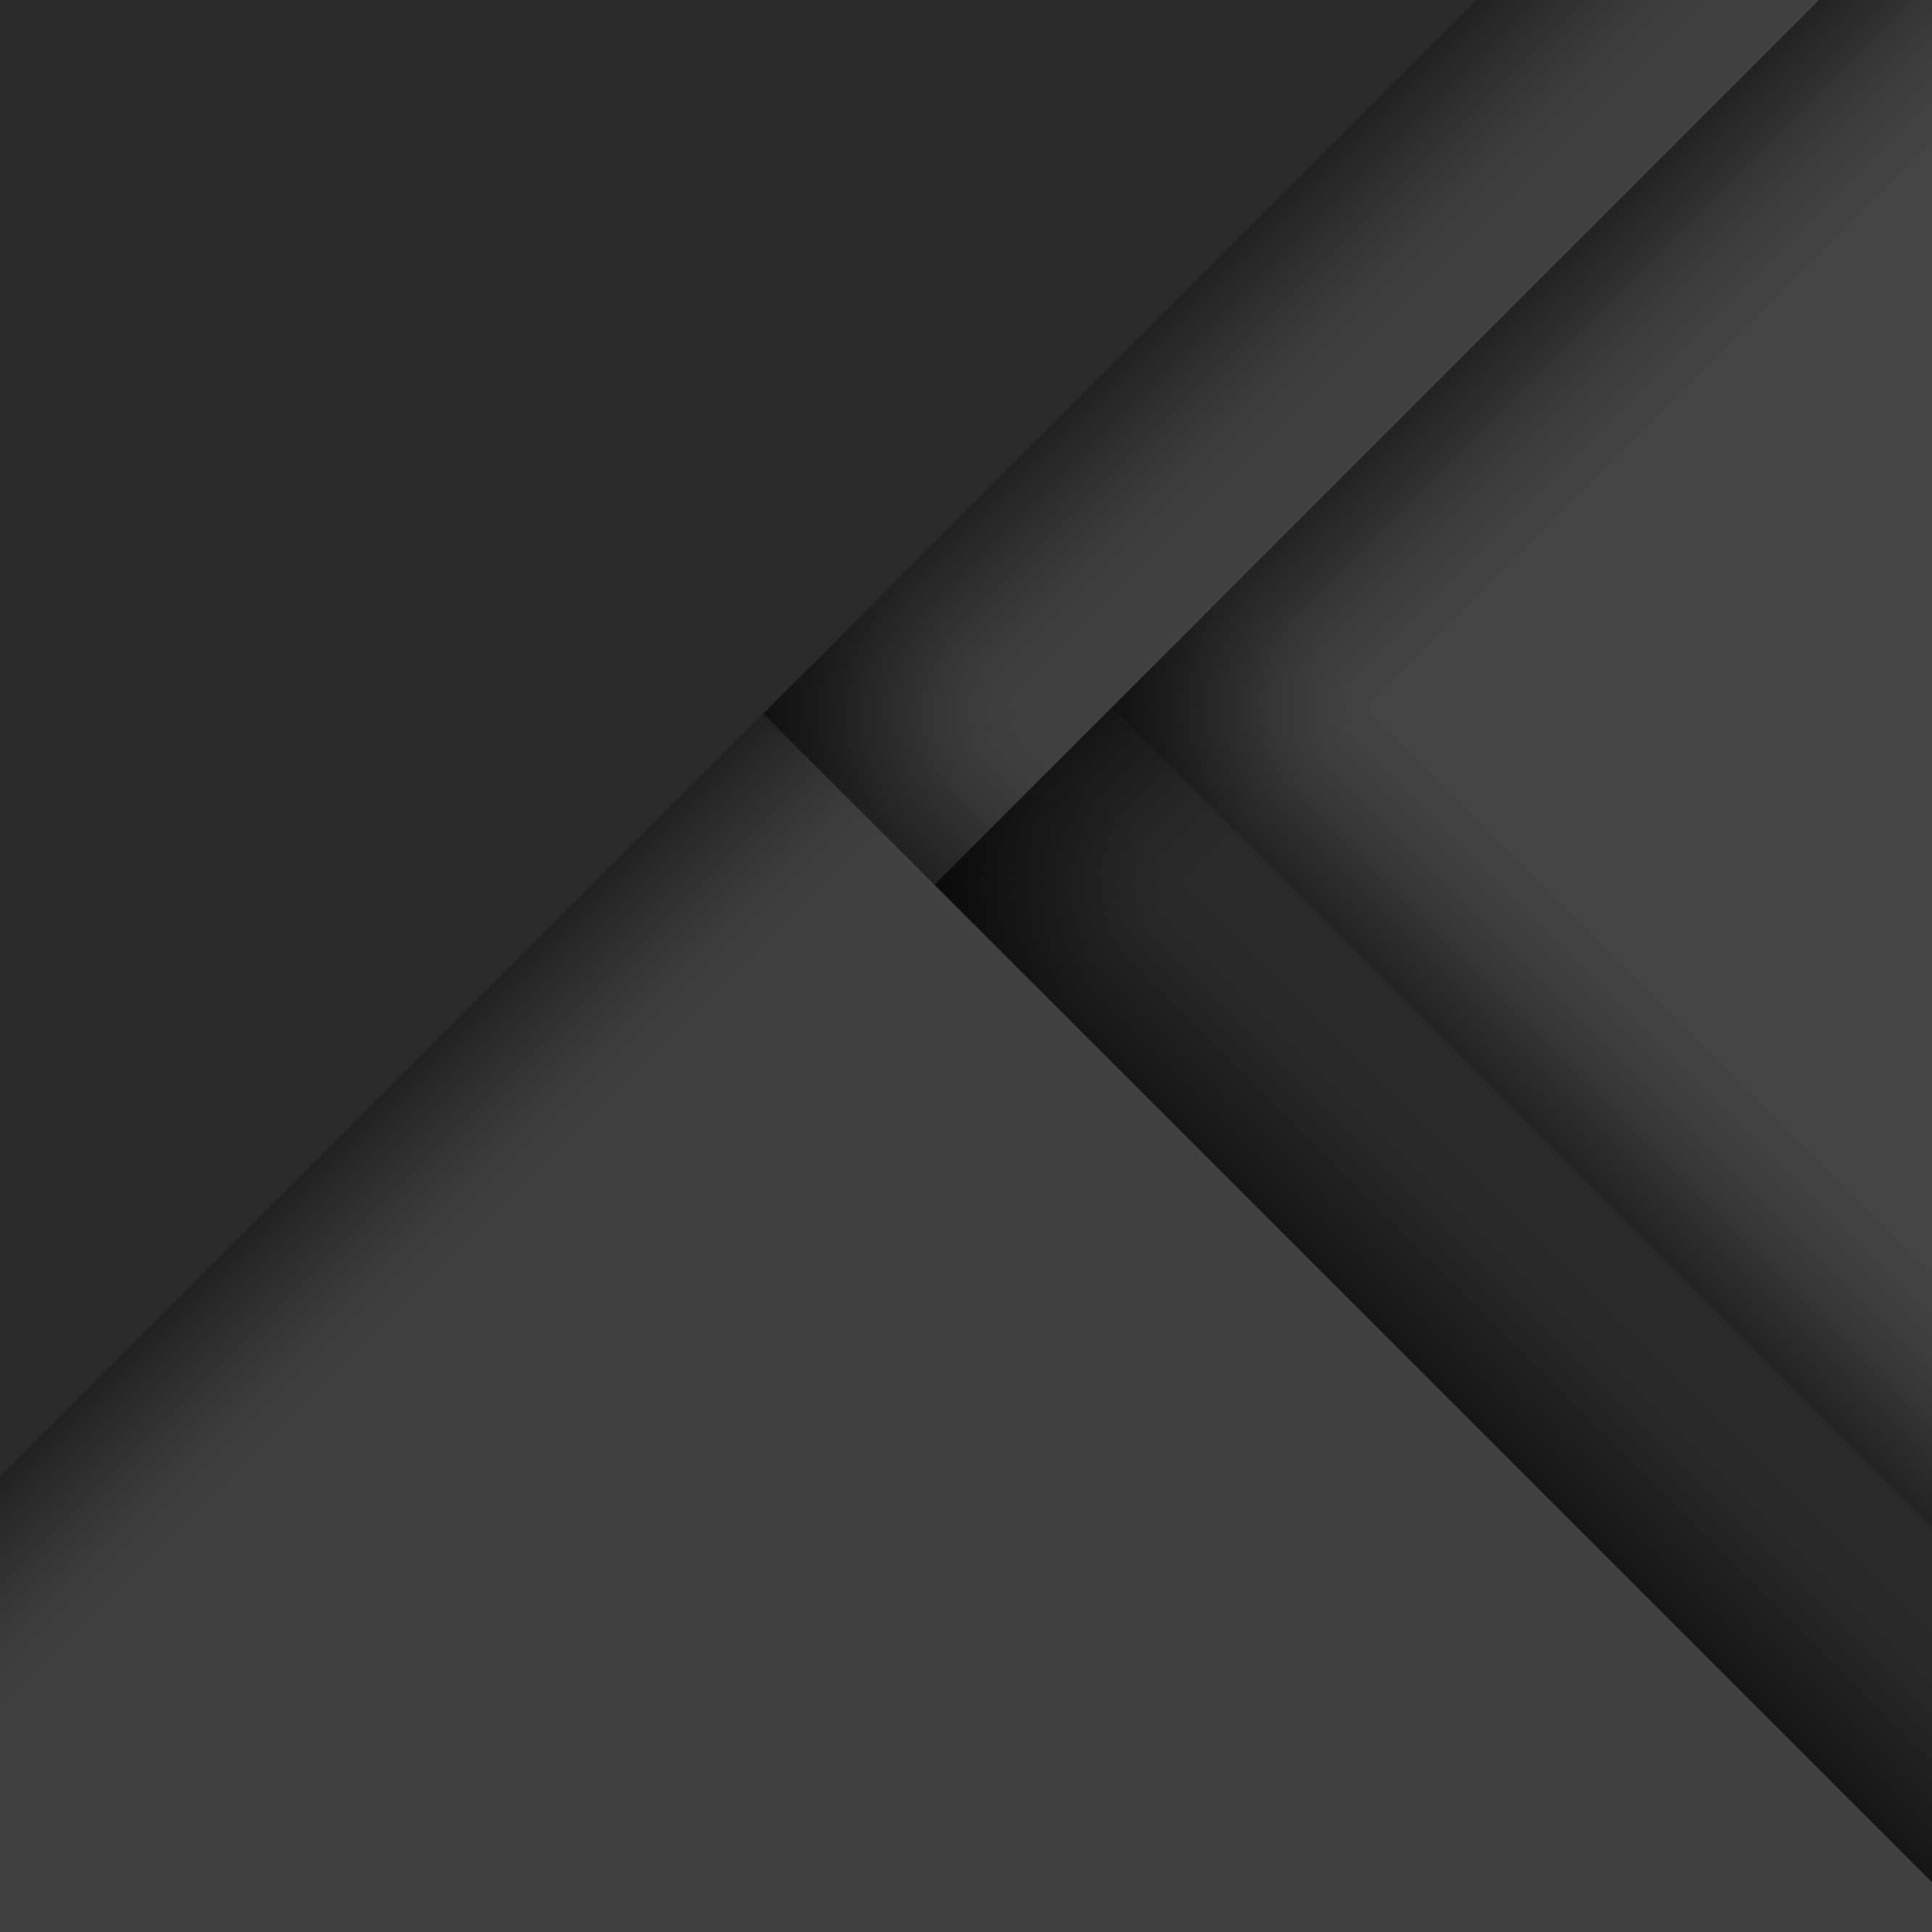 141 Material Design Wallpapers | Nexus 6